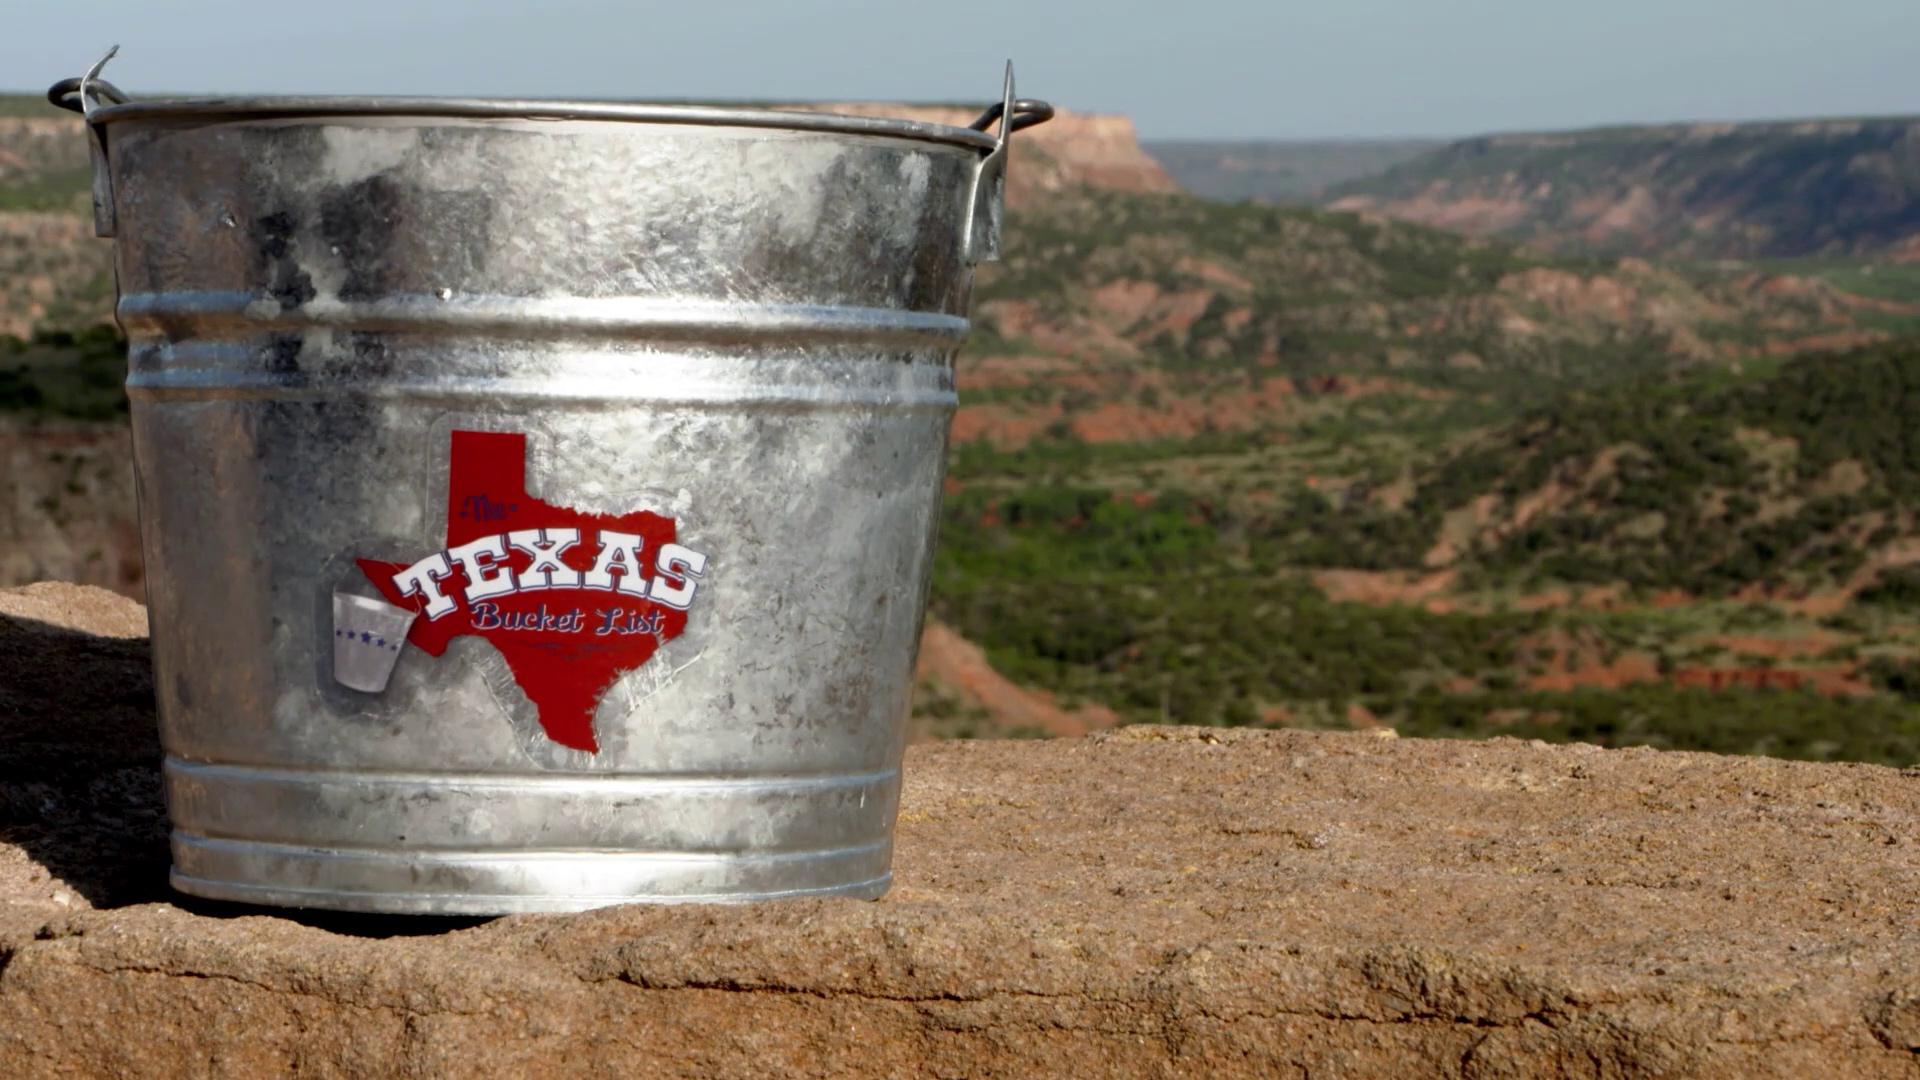 The Texas Bucket List logo.